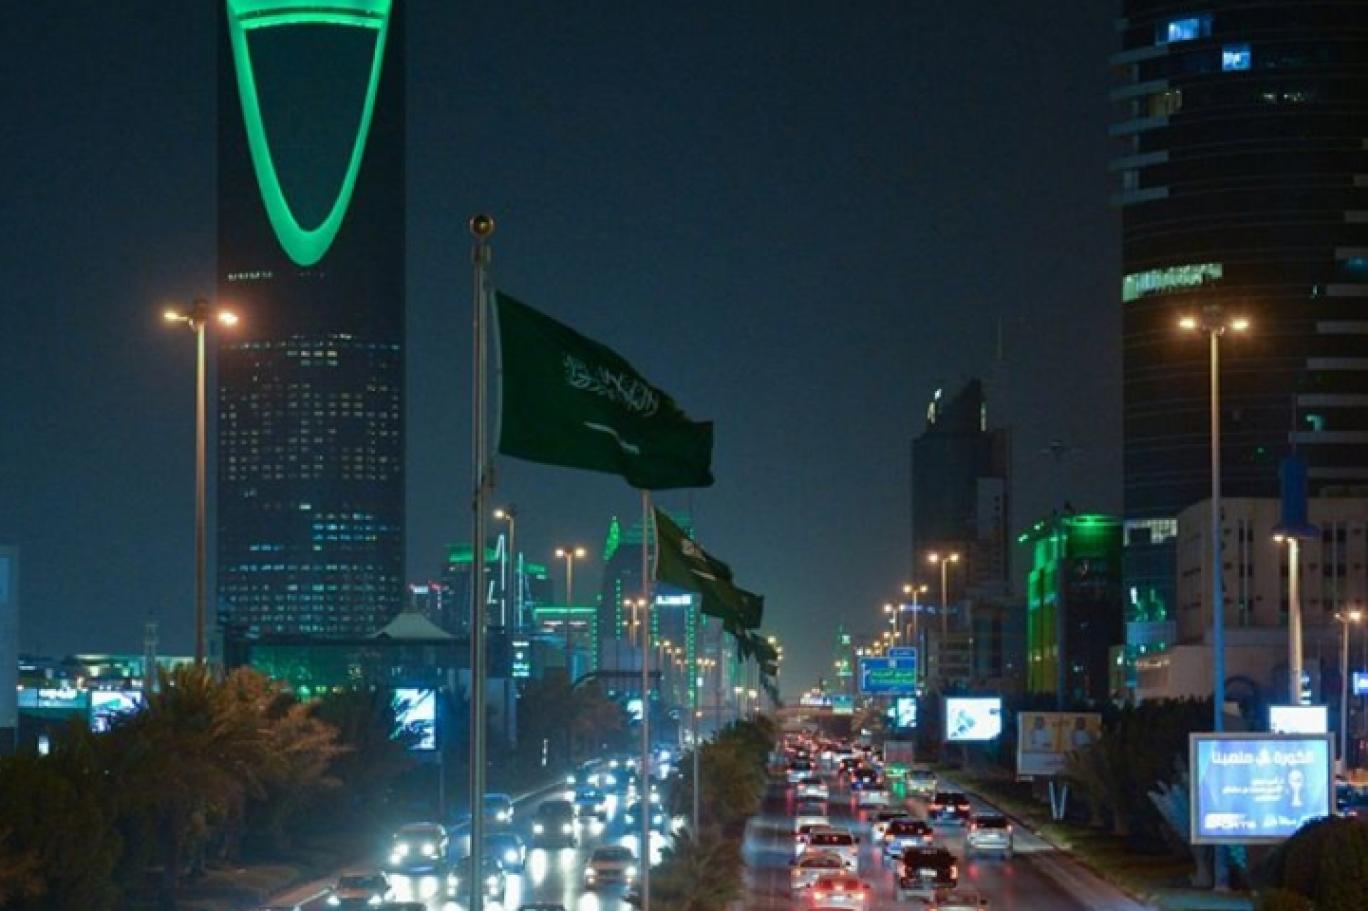 السعودية.. النيابة العامة تحقق في اعلانات خادشة للحياء